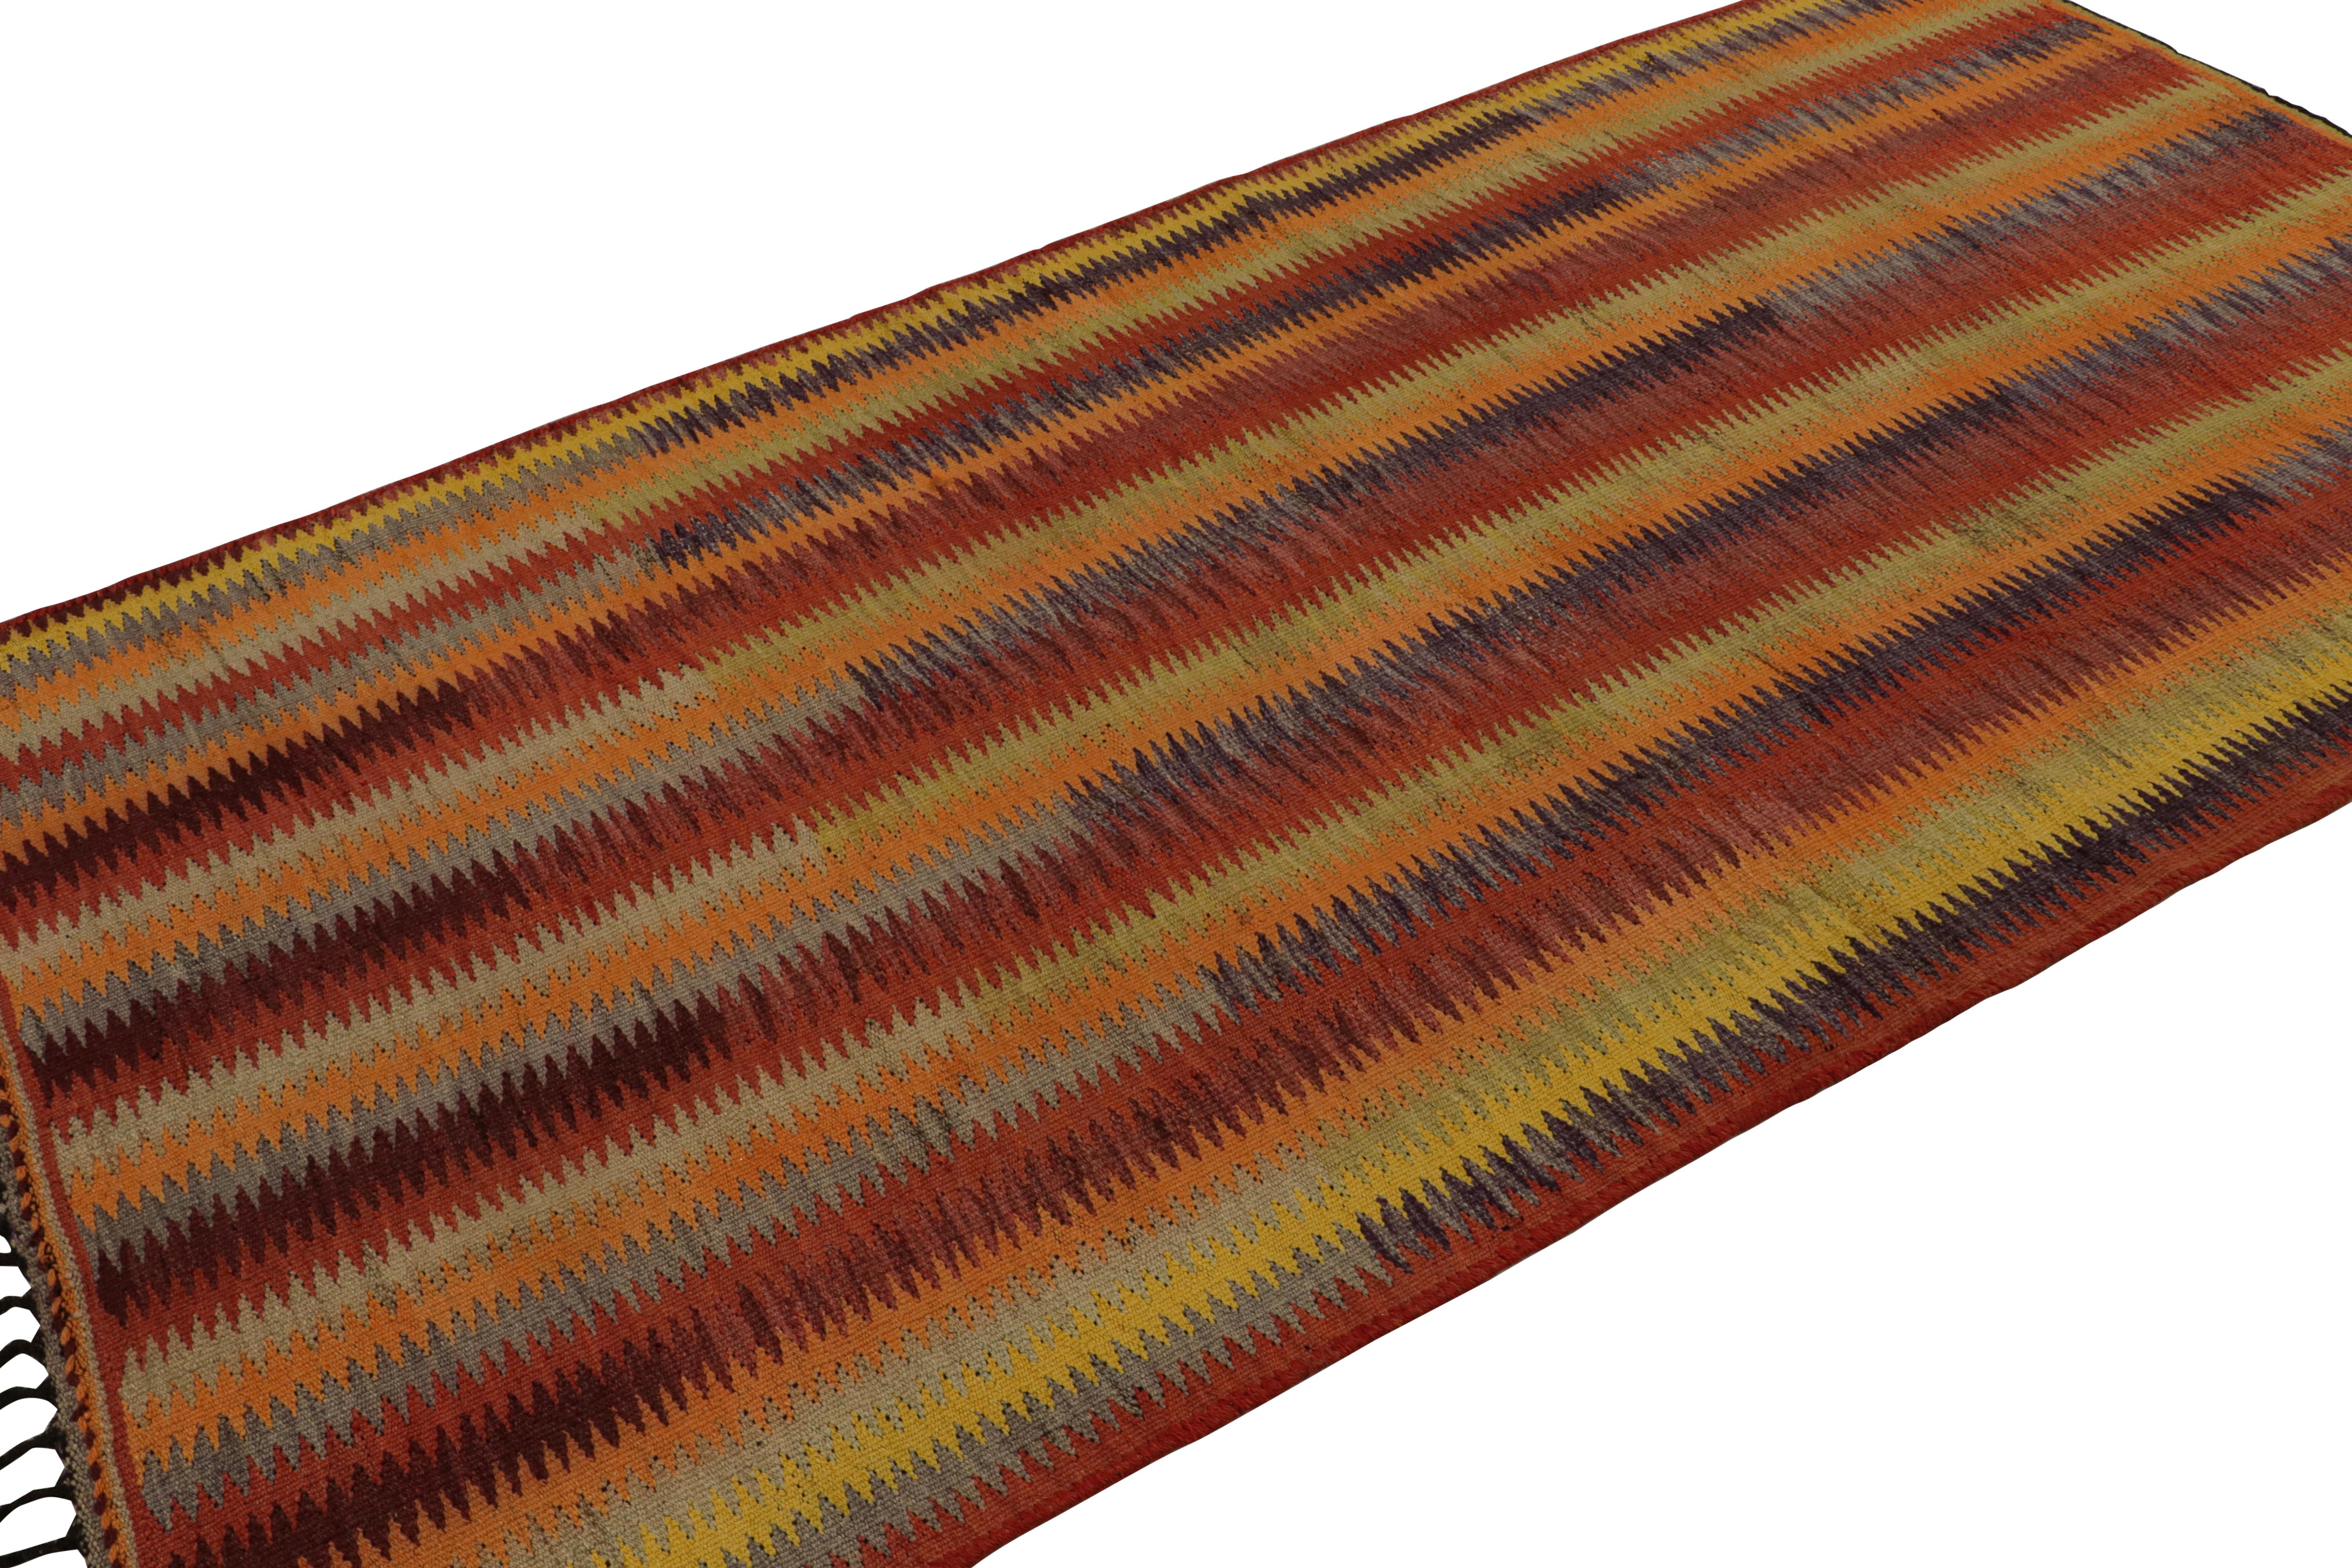 Ce Kilim persan vintage de 5x9 est un tapis tribal du milieu du siècle - le dernier à rejoindre notre collection Kilim & Flatweave. 

Sur le Design :

Tissé à la main en laine vers 1950-1960, son design présente des rayures colorées en rouge, bleu,